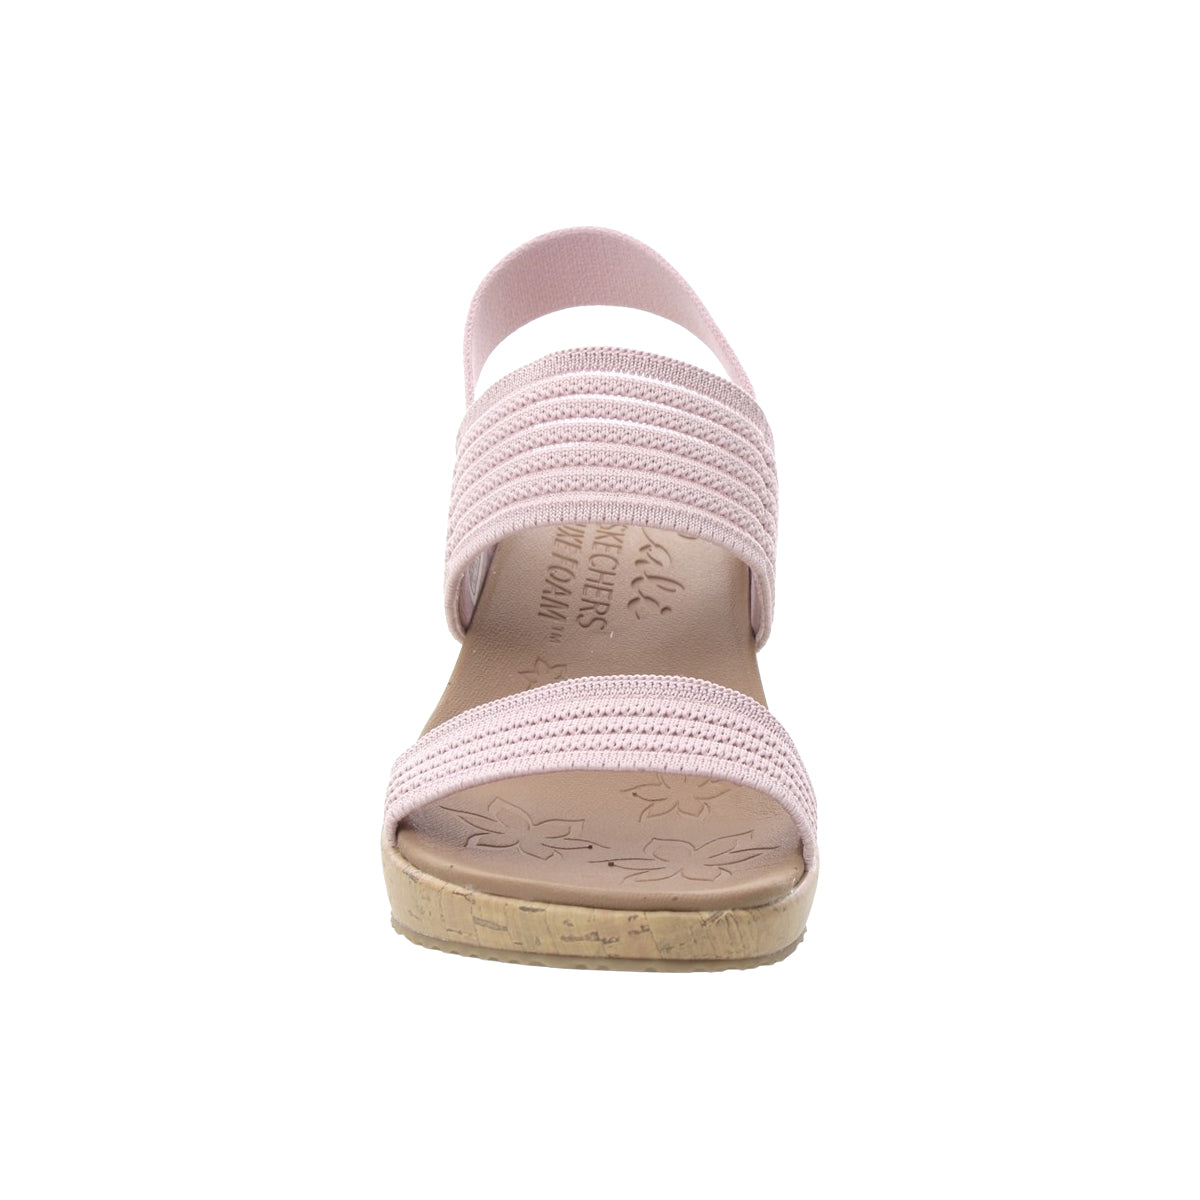 Skechers Women’s Beverlee Sheer Luck Pink Vegan Wedge Cork Sandals